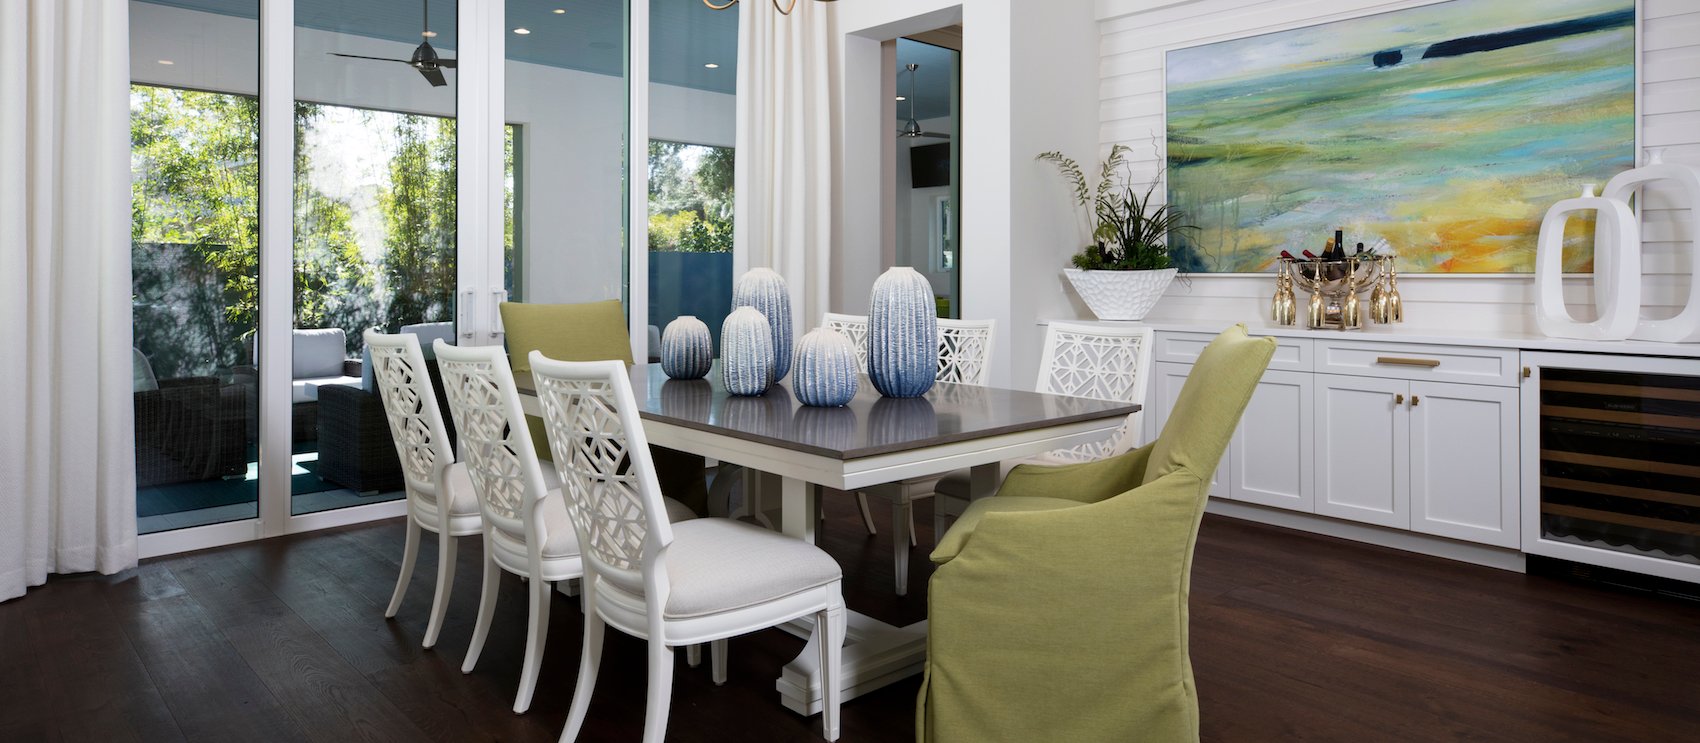 Downton dining interior design in Naples Florida. Full-service interior design